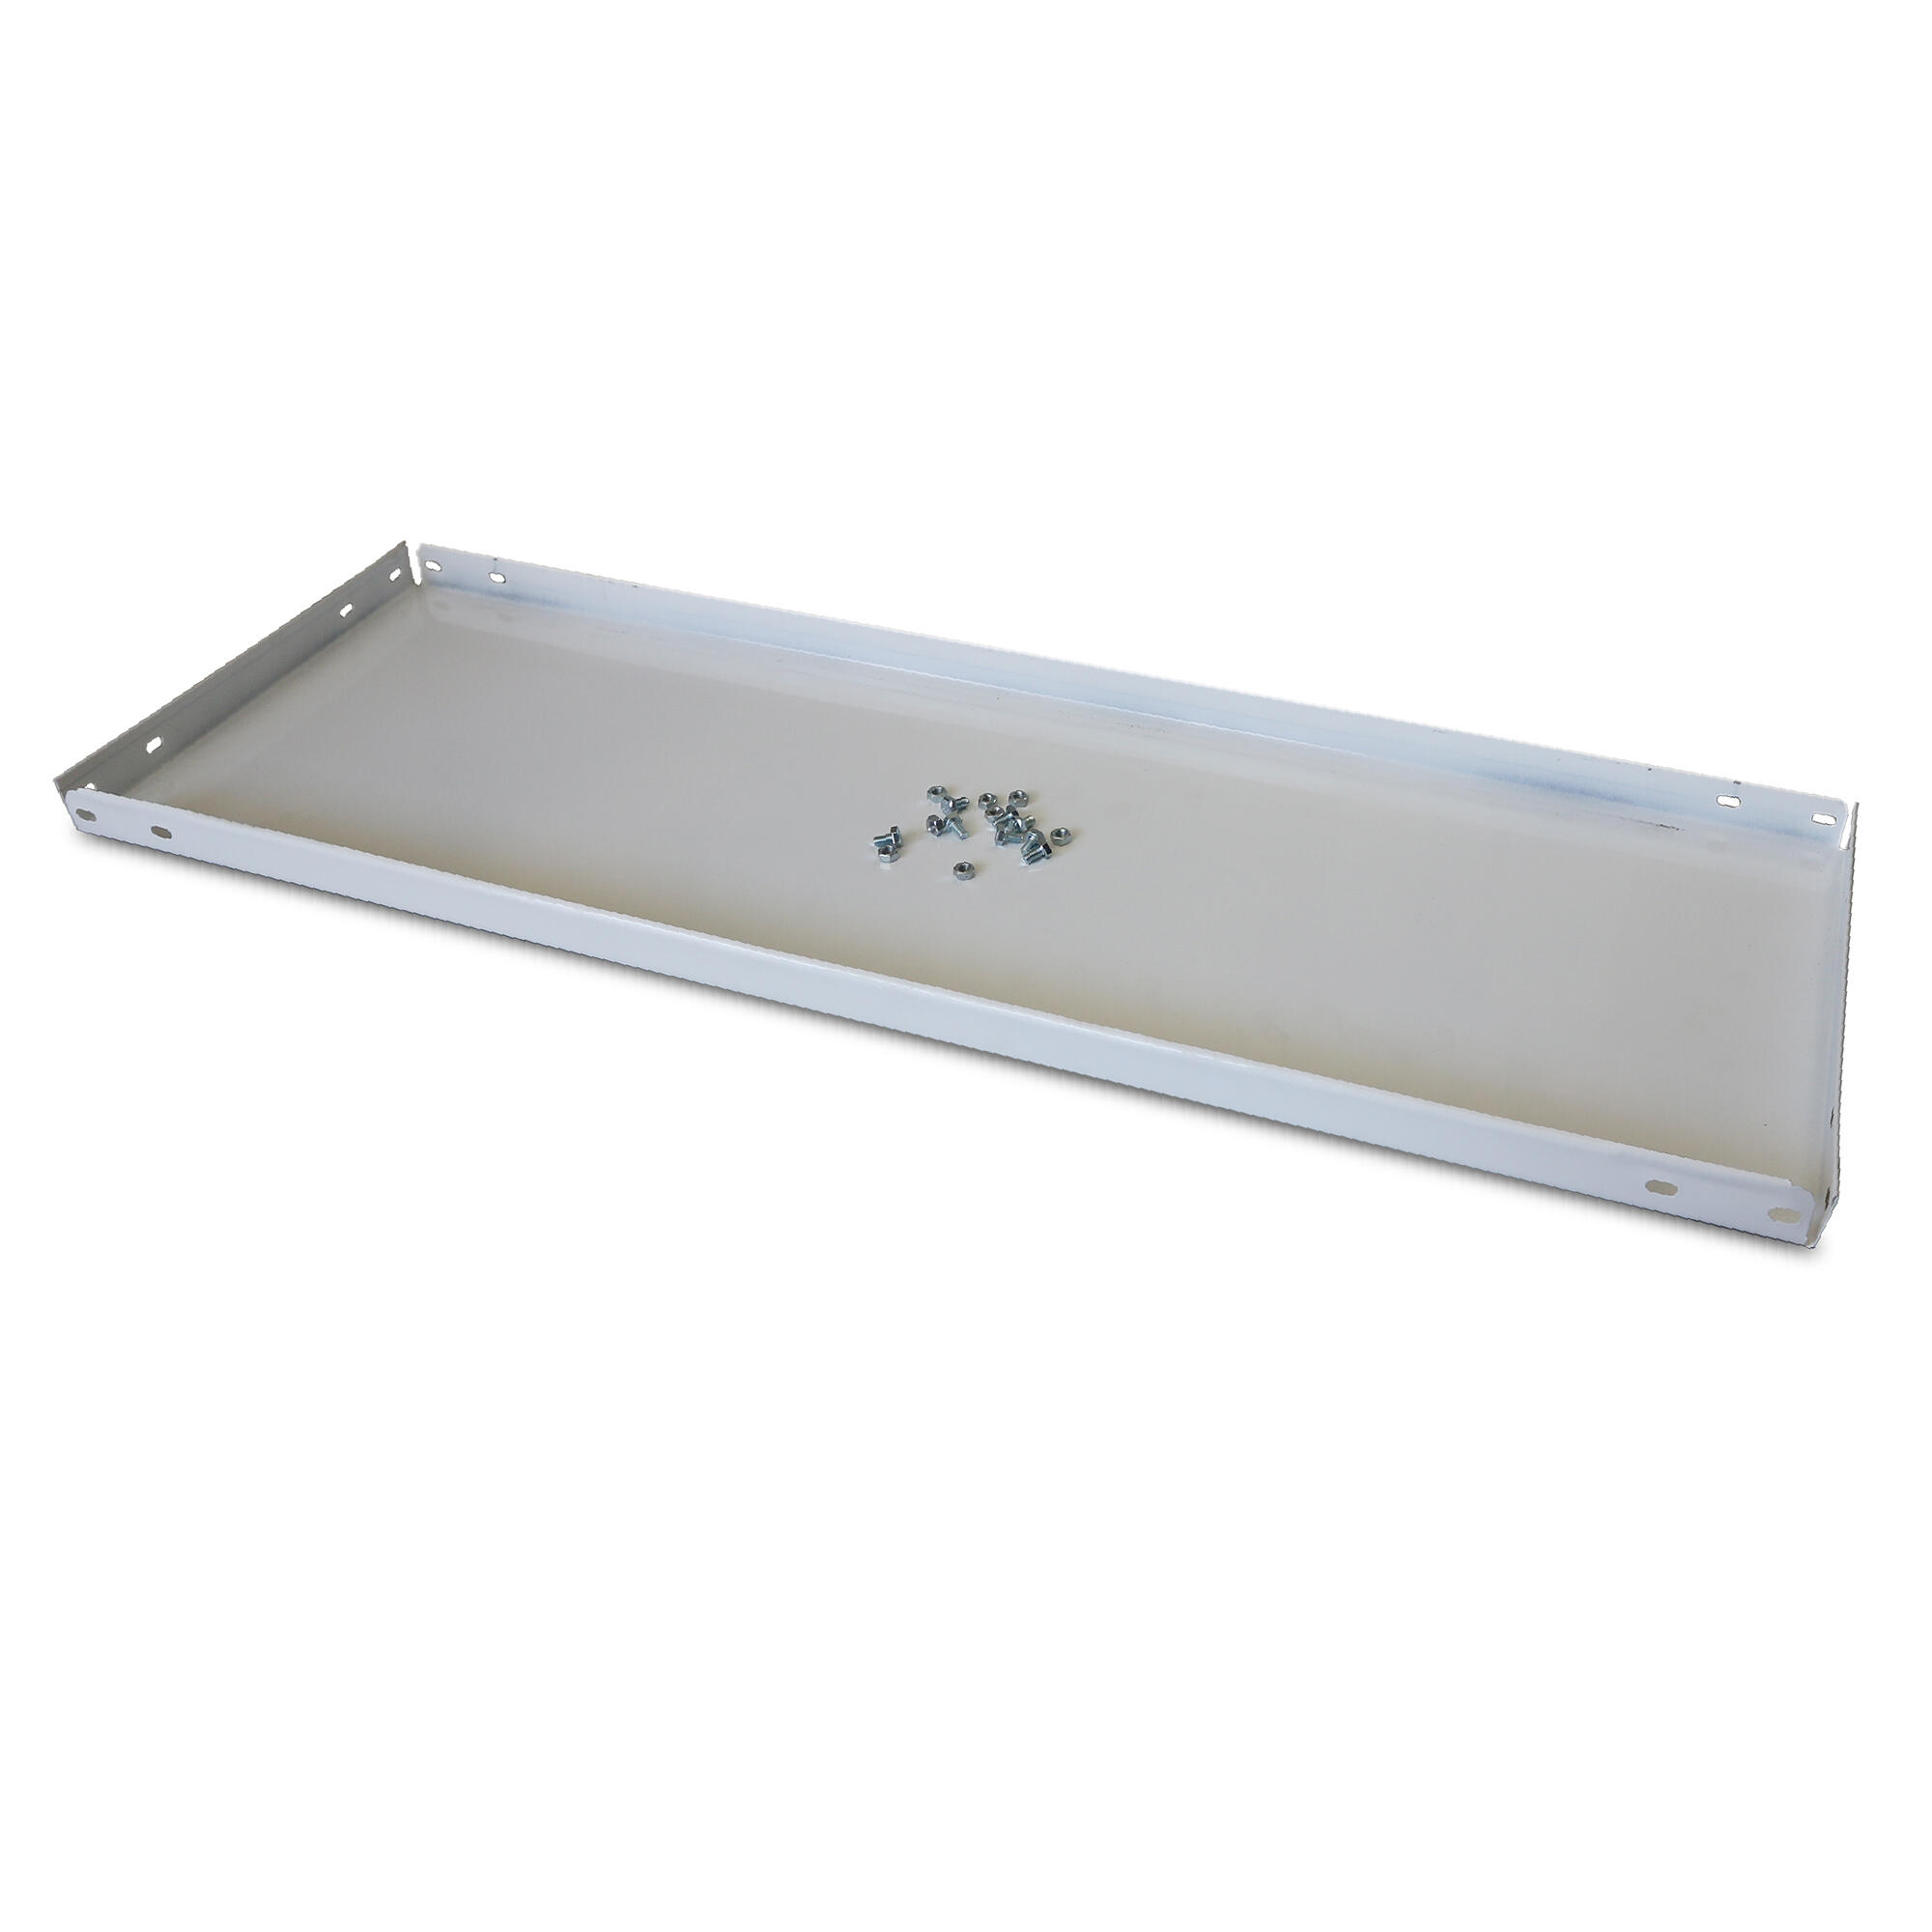 Balda recta para sistema de estantes de acero blanco de 60x30cm